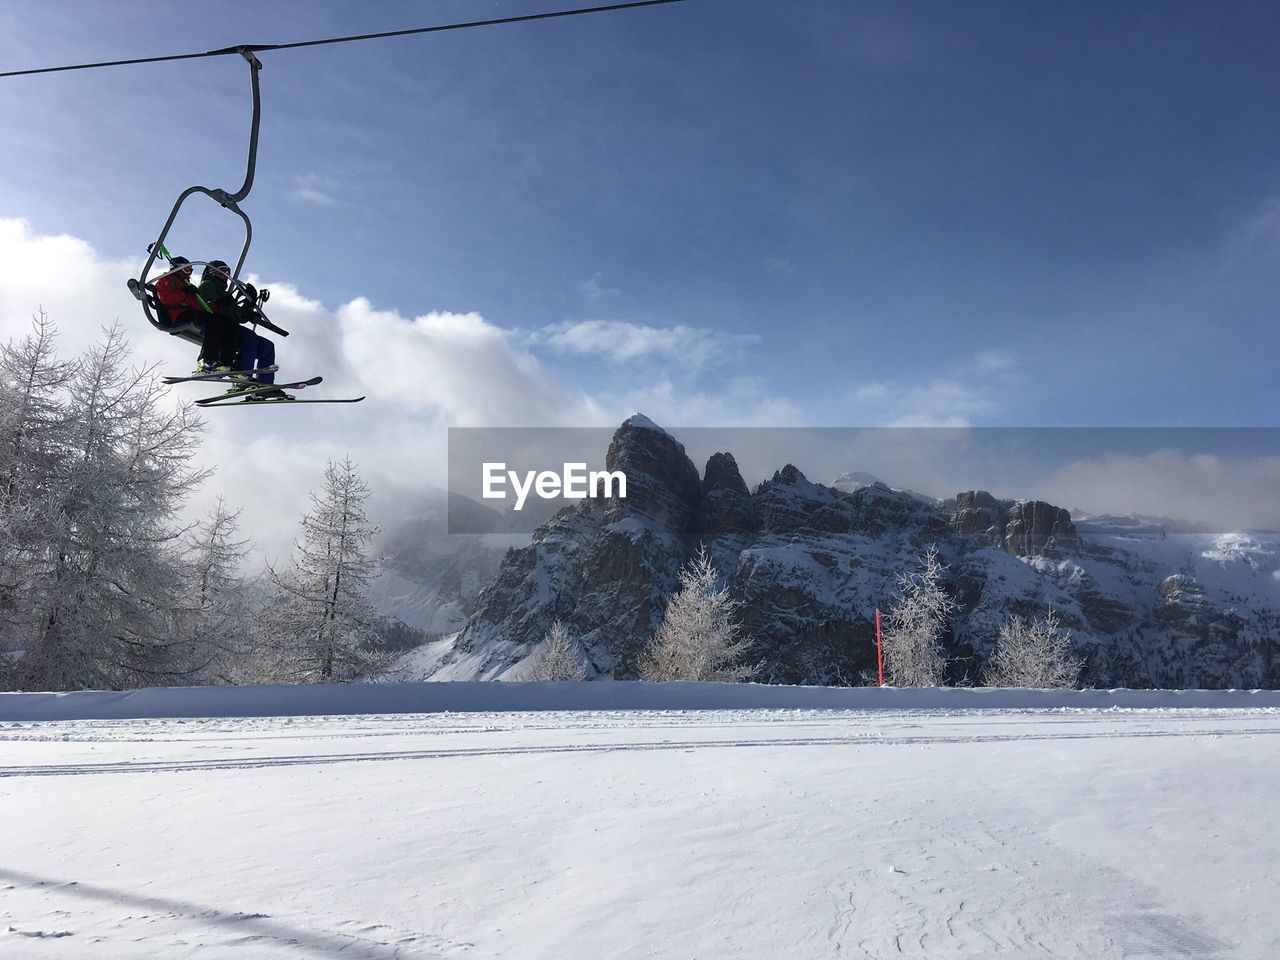 SKI LIFT ON SNOW COVERED MOUNTAIN